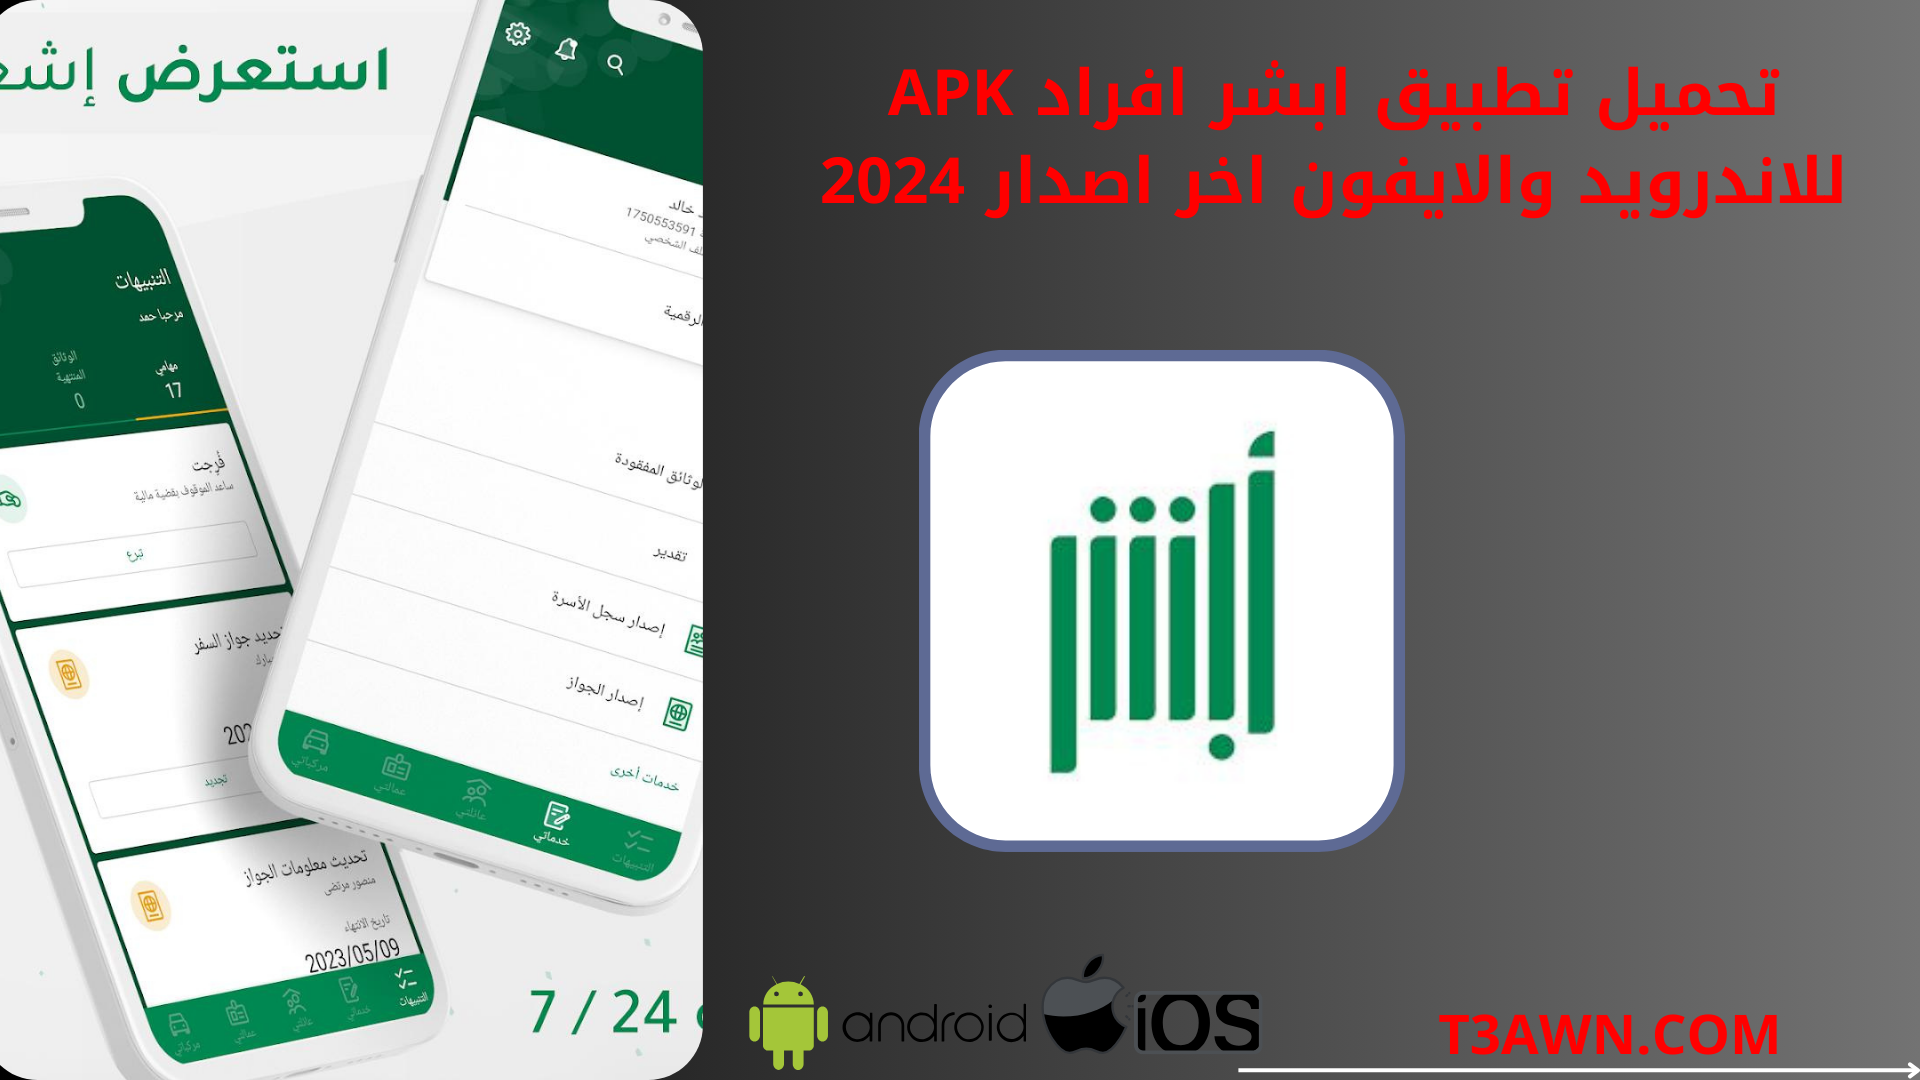 تحميل تطبيق ابشر افراد apk للاندرويد والايفون اخر اصدار 2024